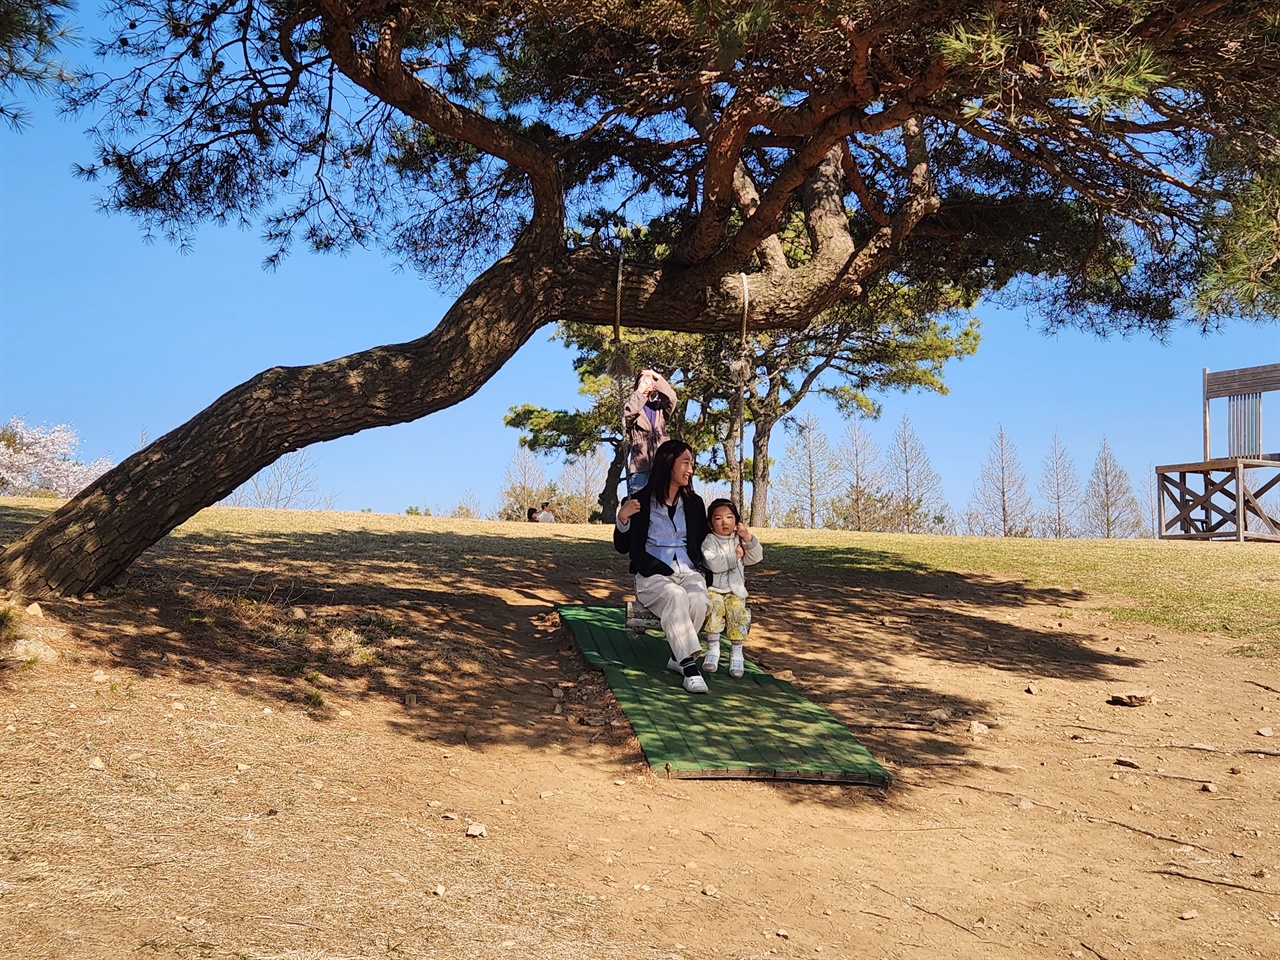  경주 화랑의 언덕 위에서 아이와 함께 그네를 타며 즐거워하는 모습(2023.4.3)